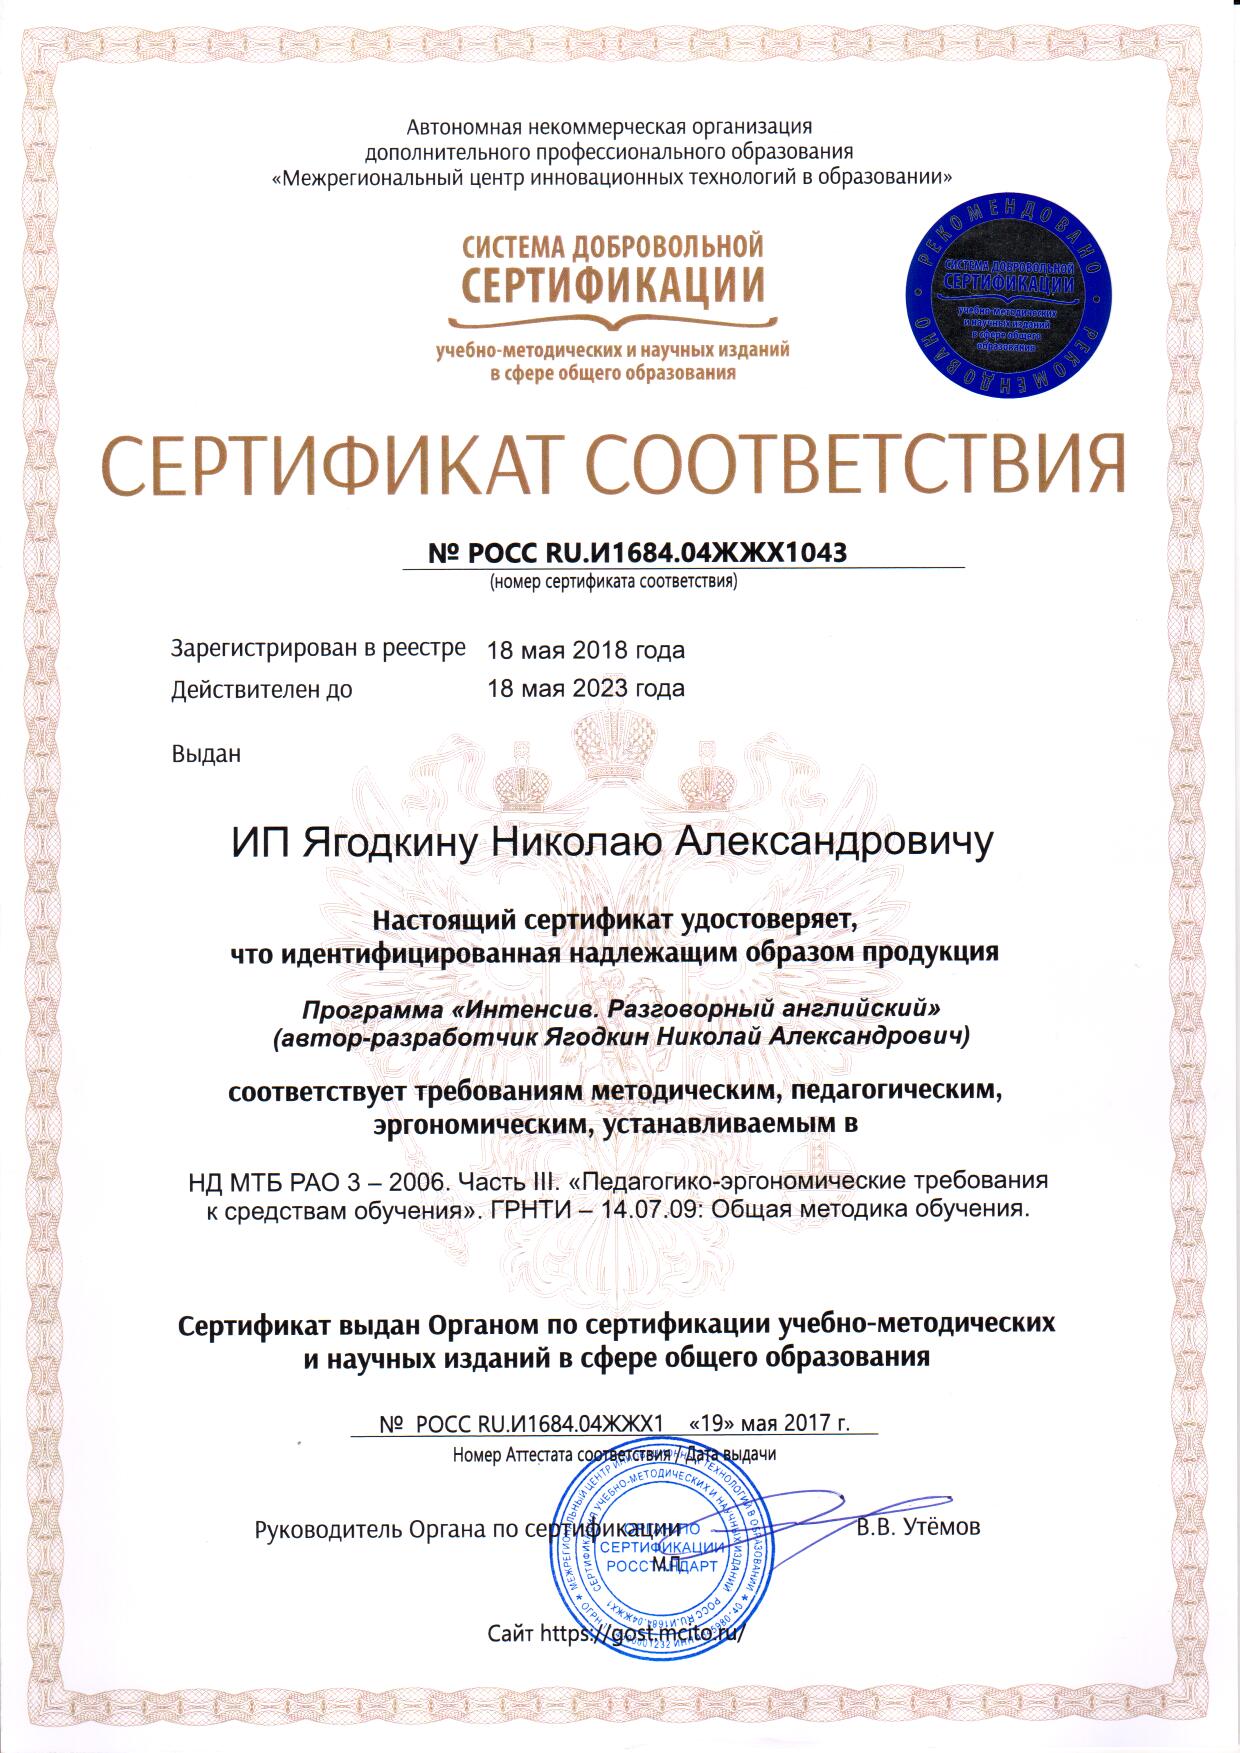 Н.А. Ягодкин. Сертификат соответствия методическим требованиям